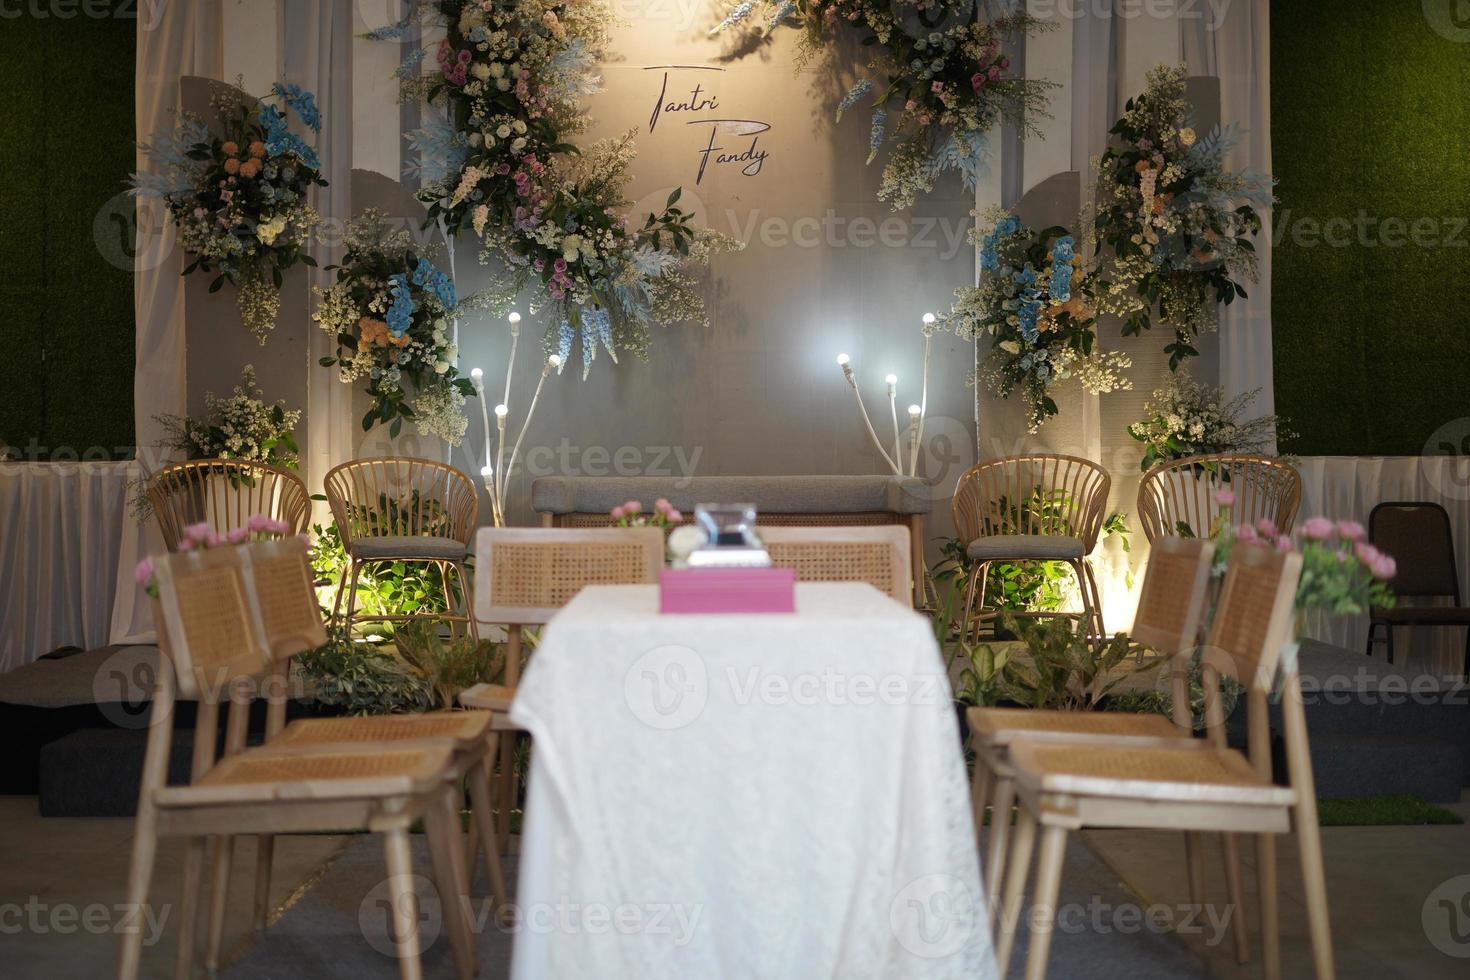 tabell och stolar arrangemang för muslim bröllop ceremoni foto